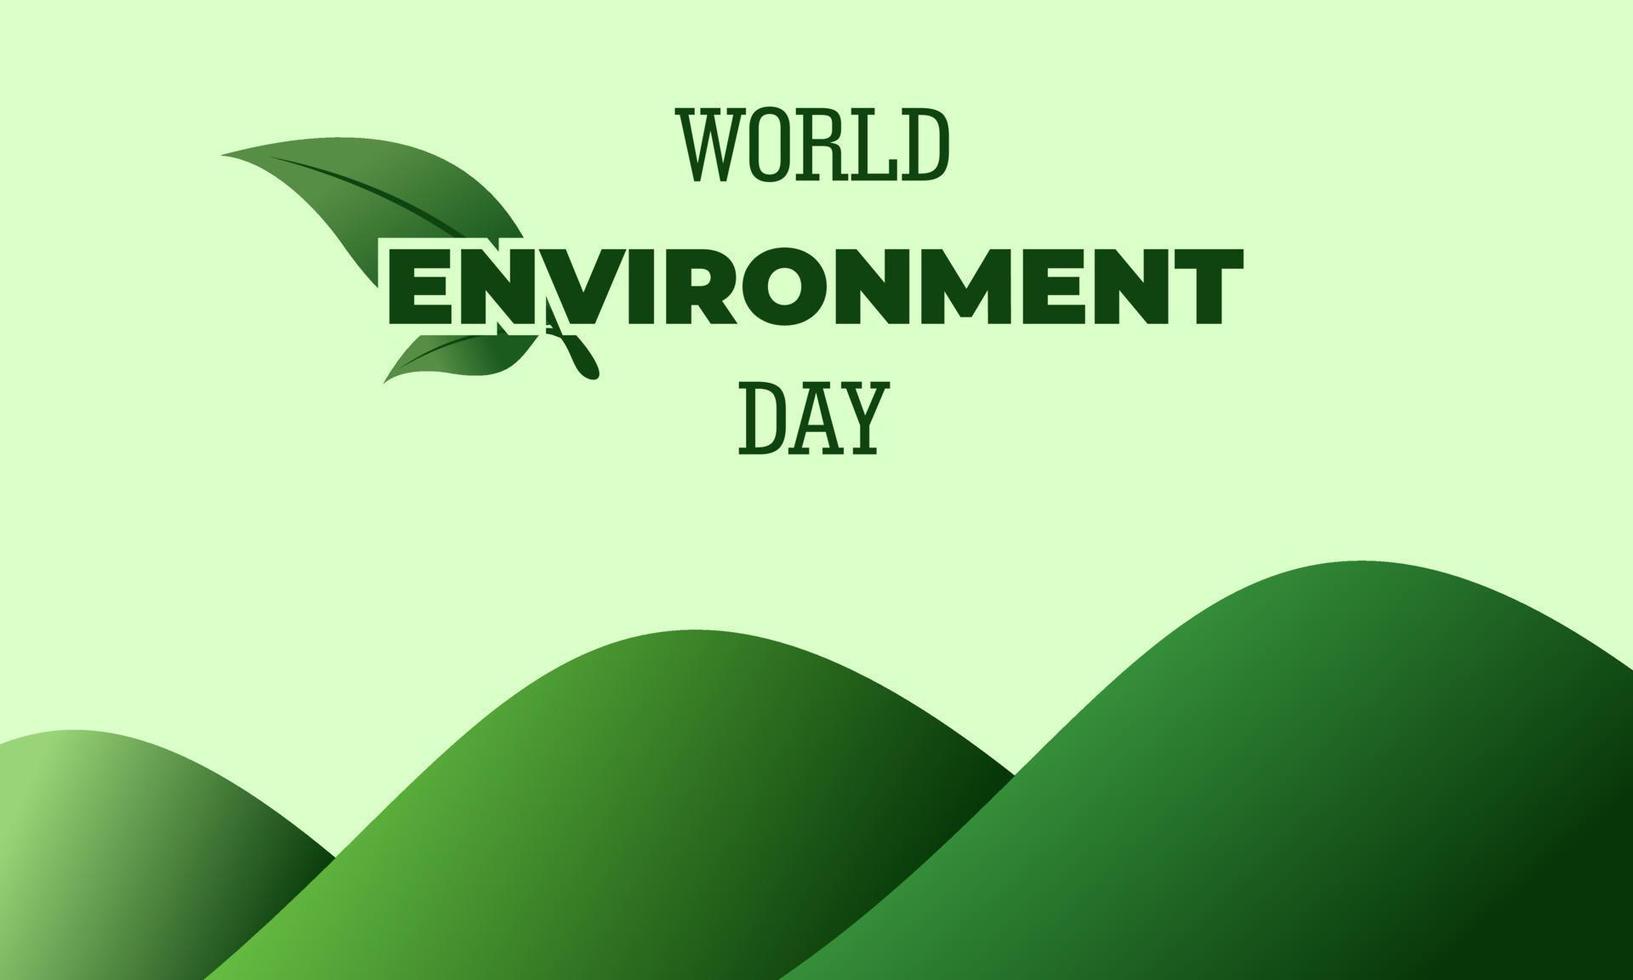 giornata mondiale dell'ambiente, disegno vettoriale verde, illustrazione vettoriale e testo